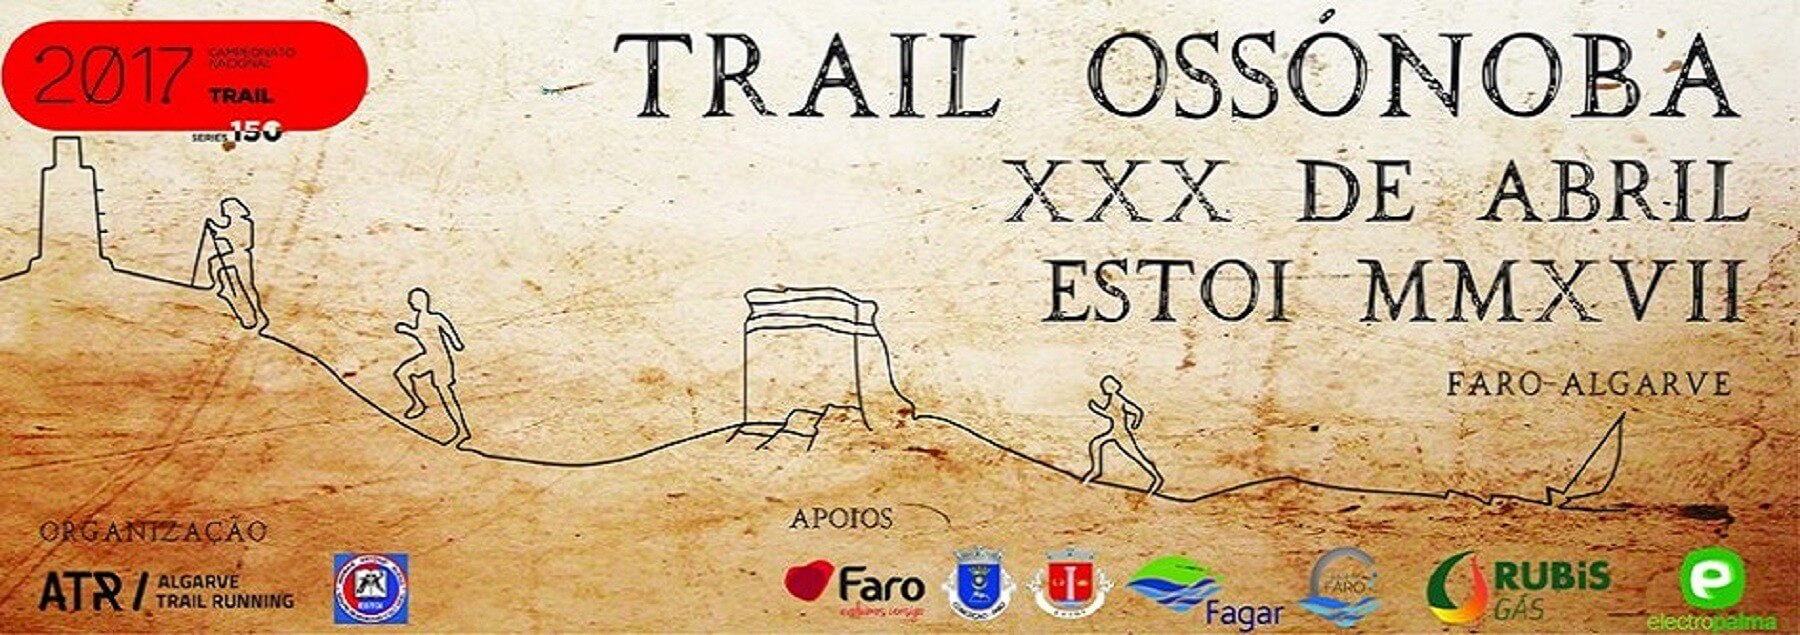 Trail Ossonoba 2017